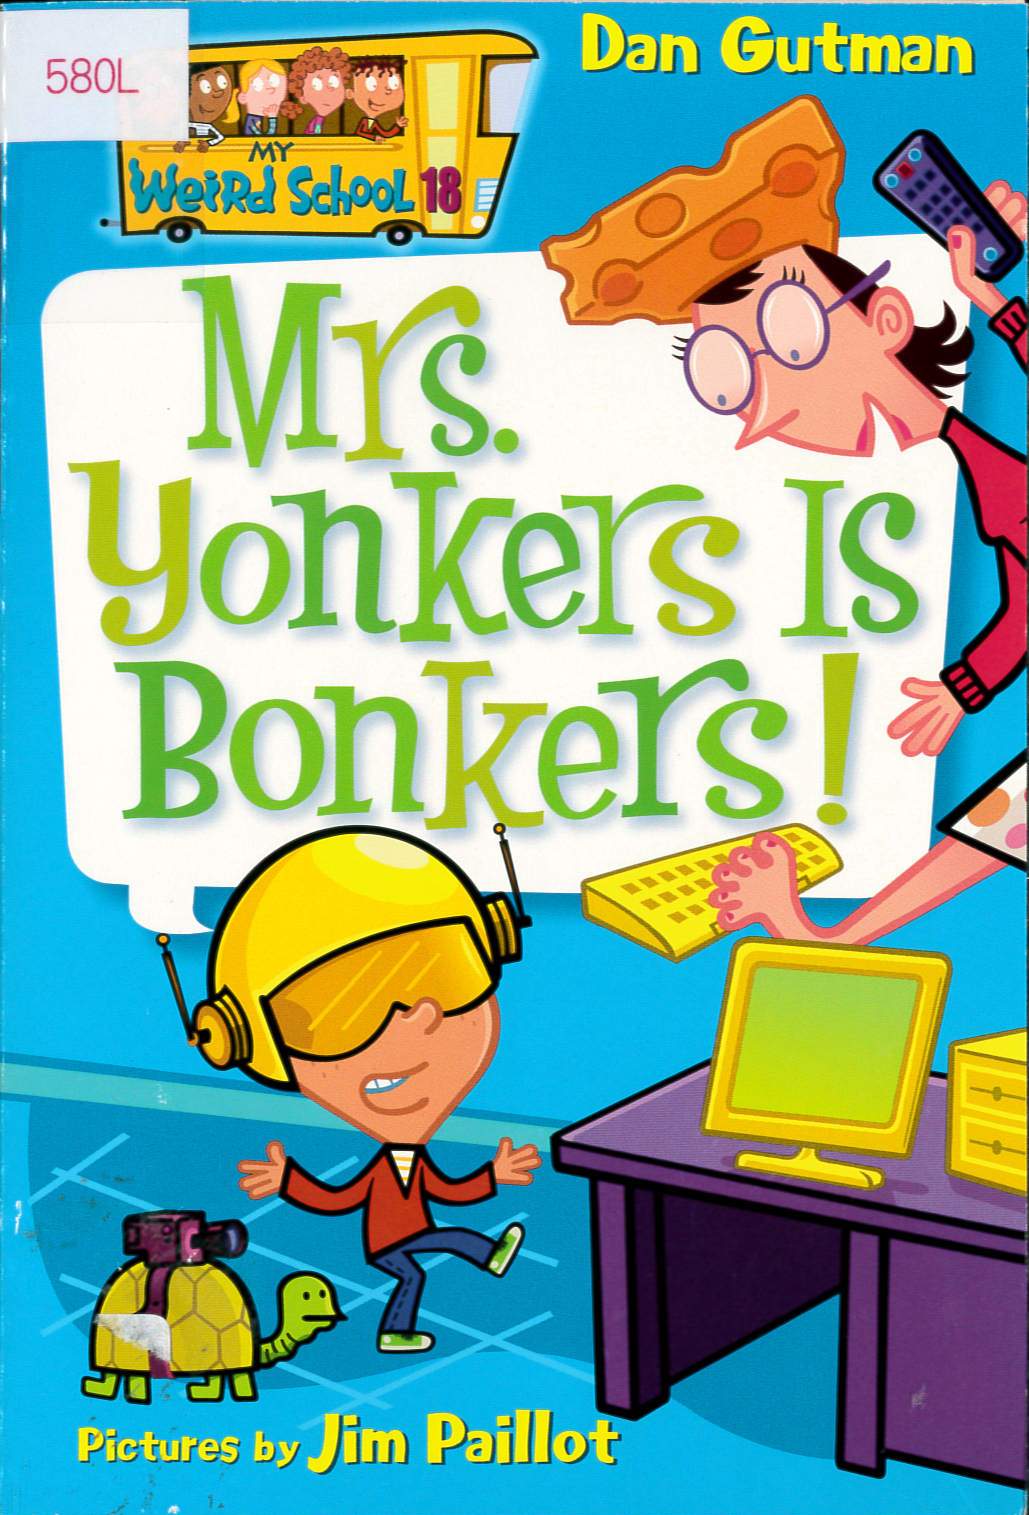 Mrs. Yonkers is bonkers! /